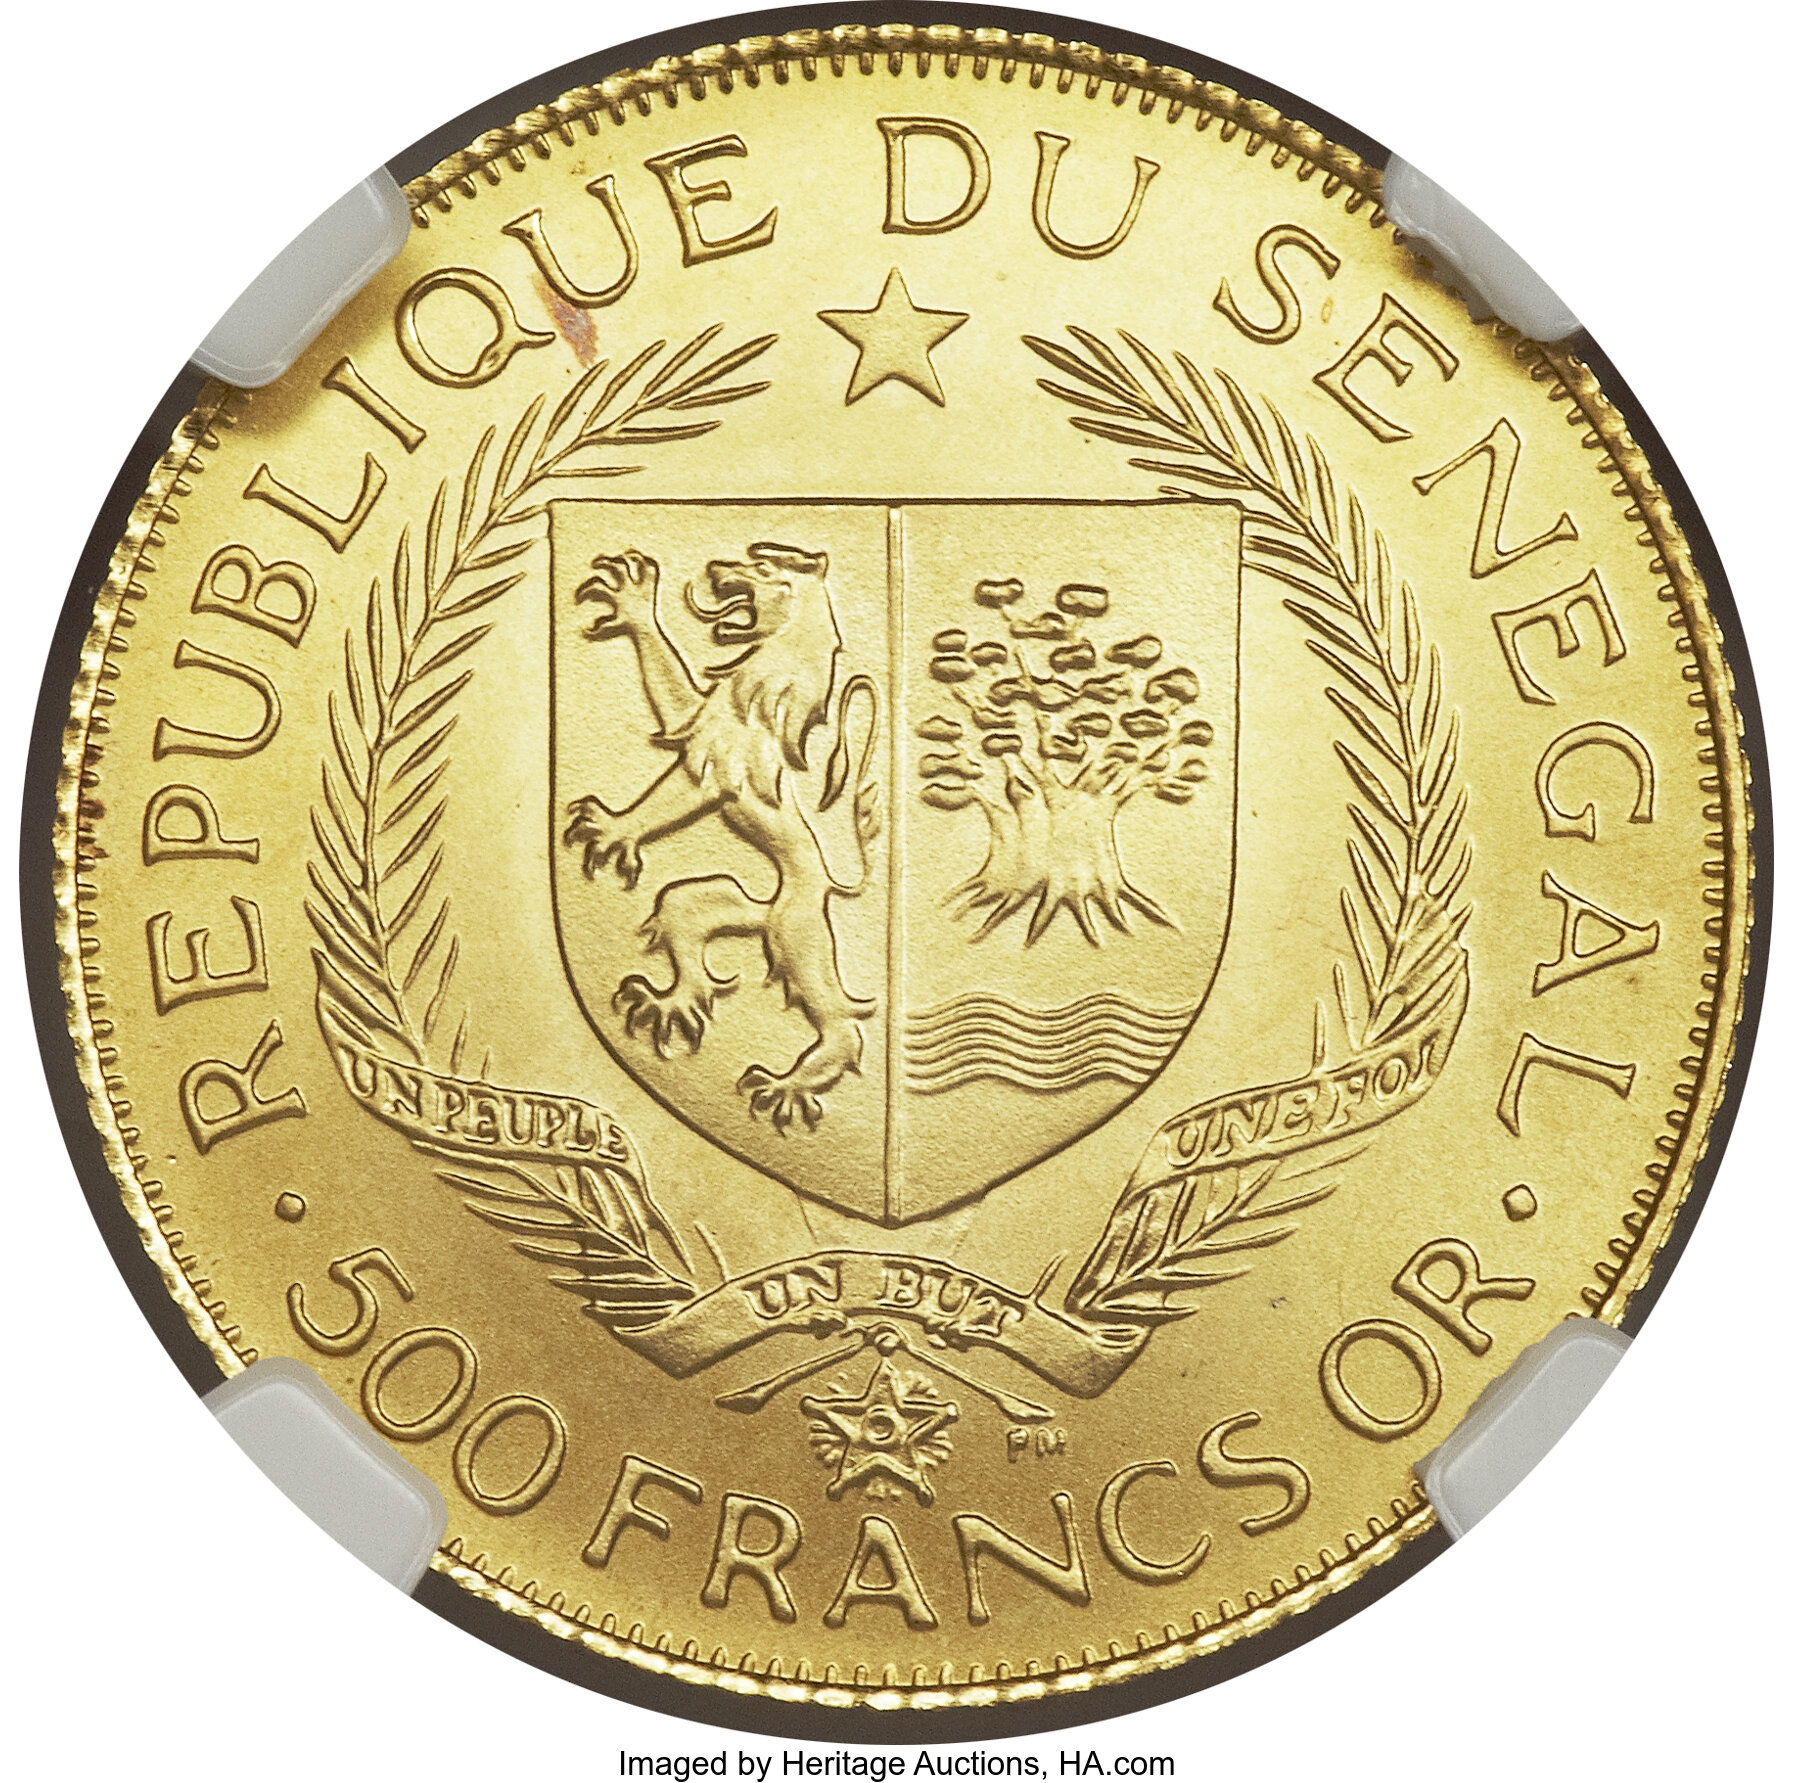 500 francs - Eurafrique - 25 ans